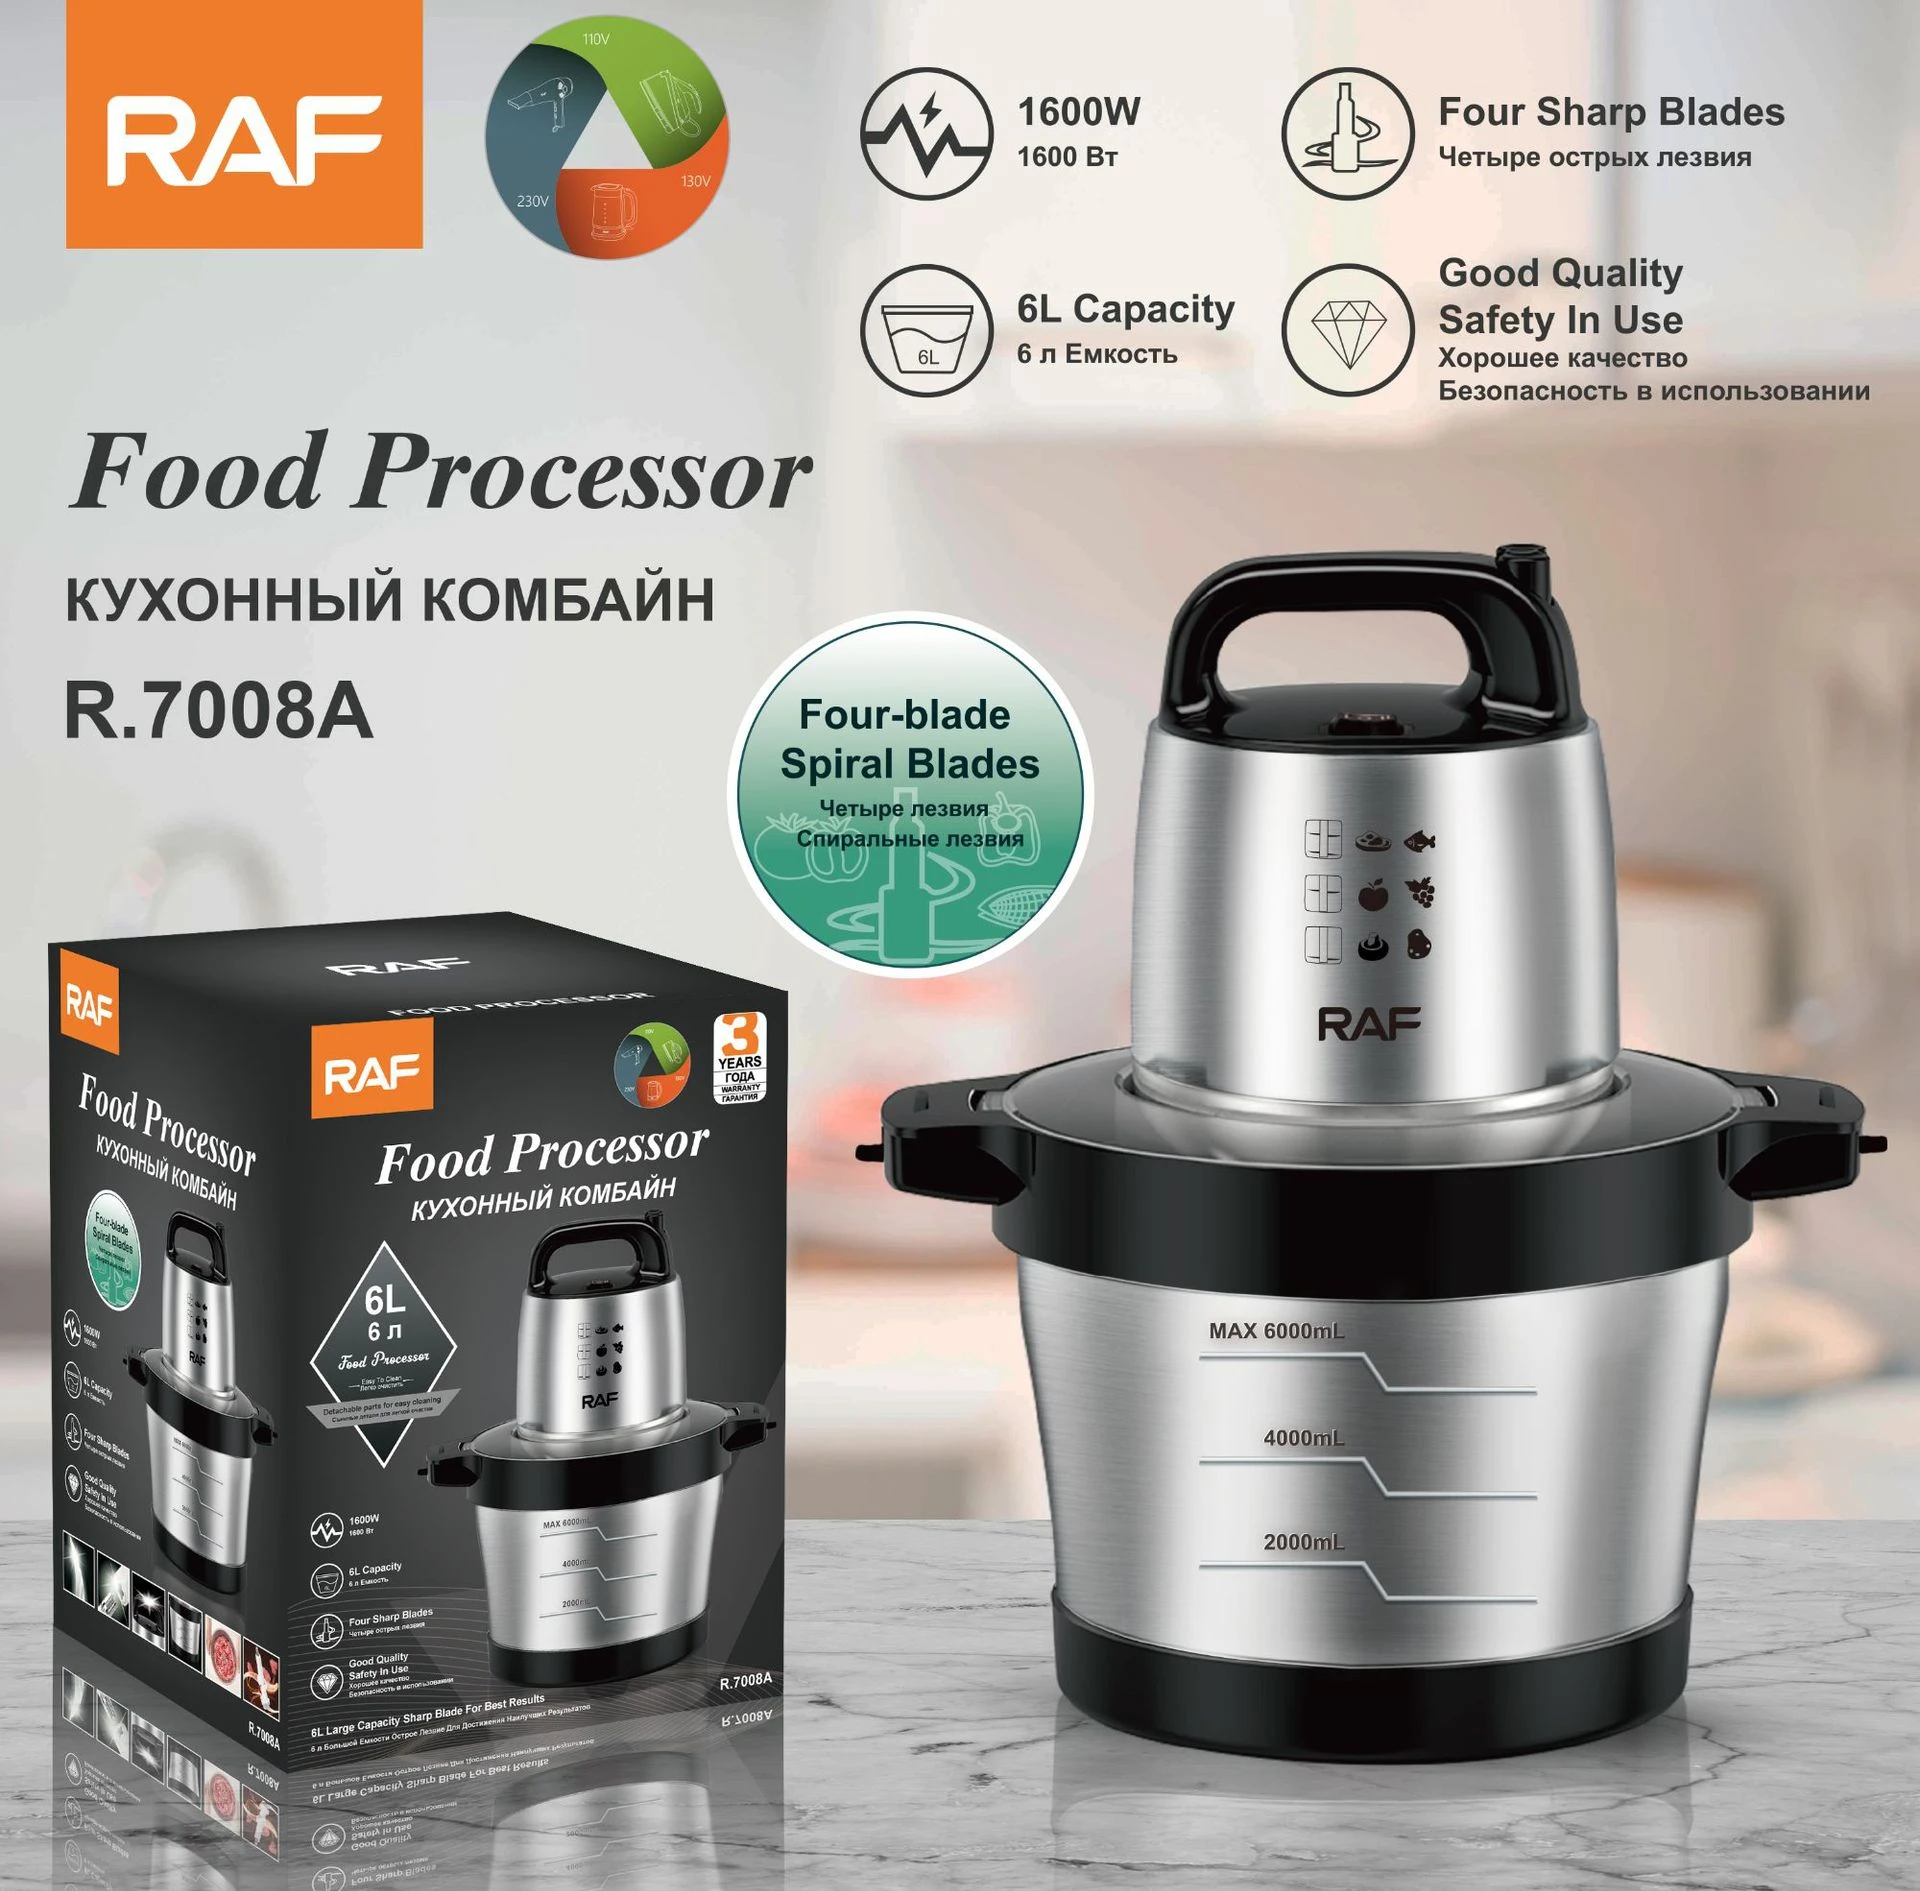 Food Processor RAF R-7008A 6.0L